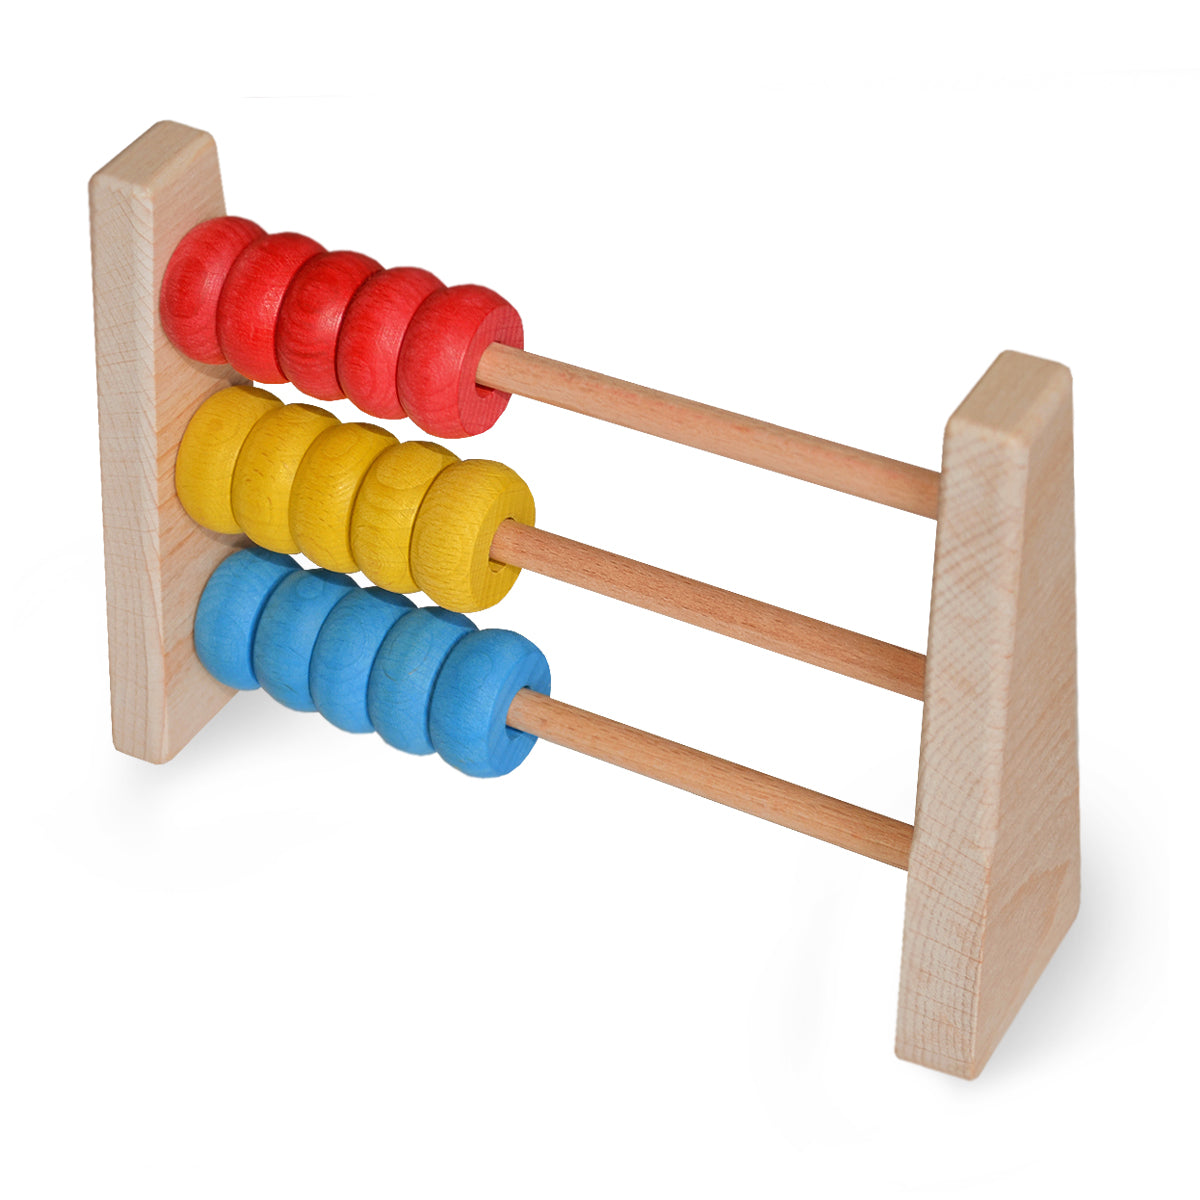 Igroteco развивающая деревянная игрушка для детей для изучения математики Абакус